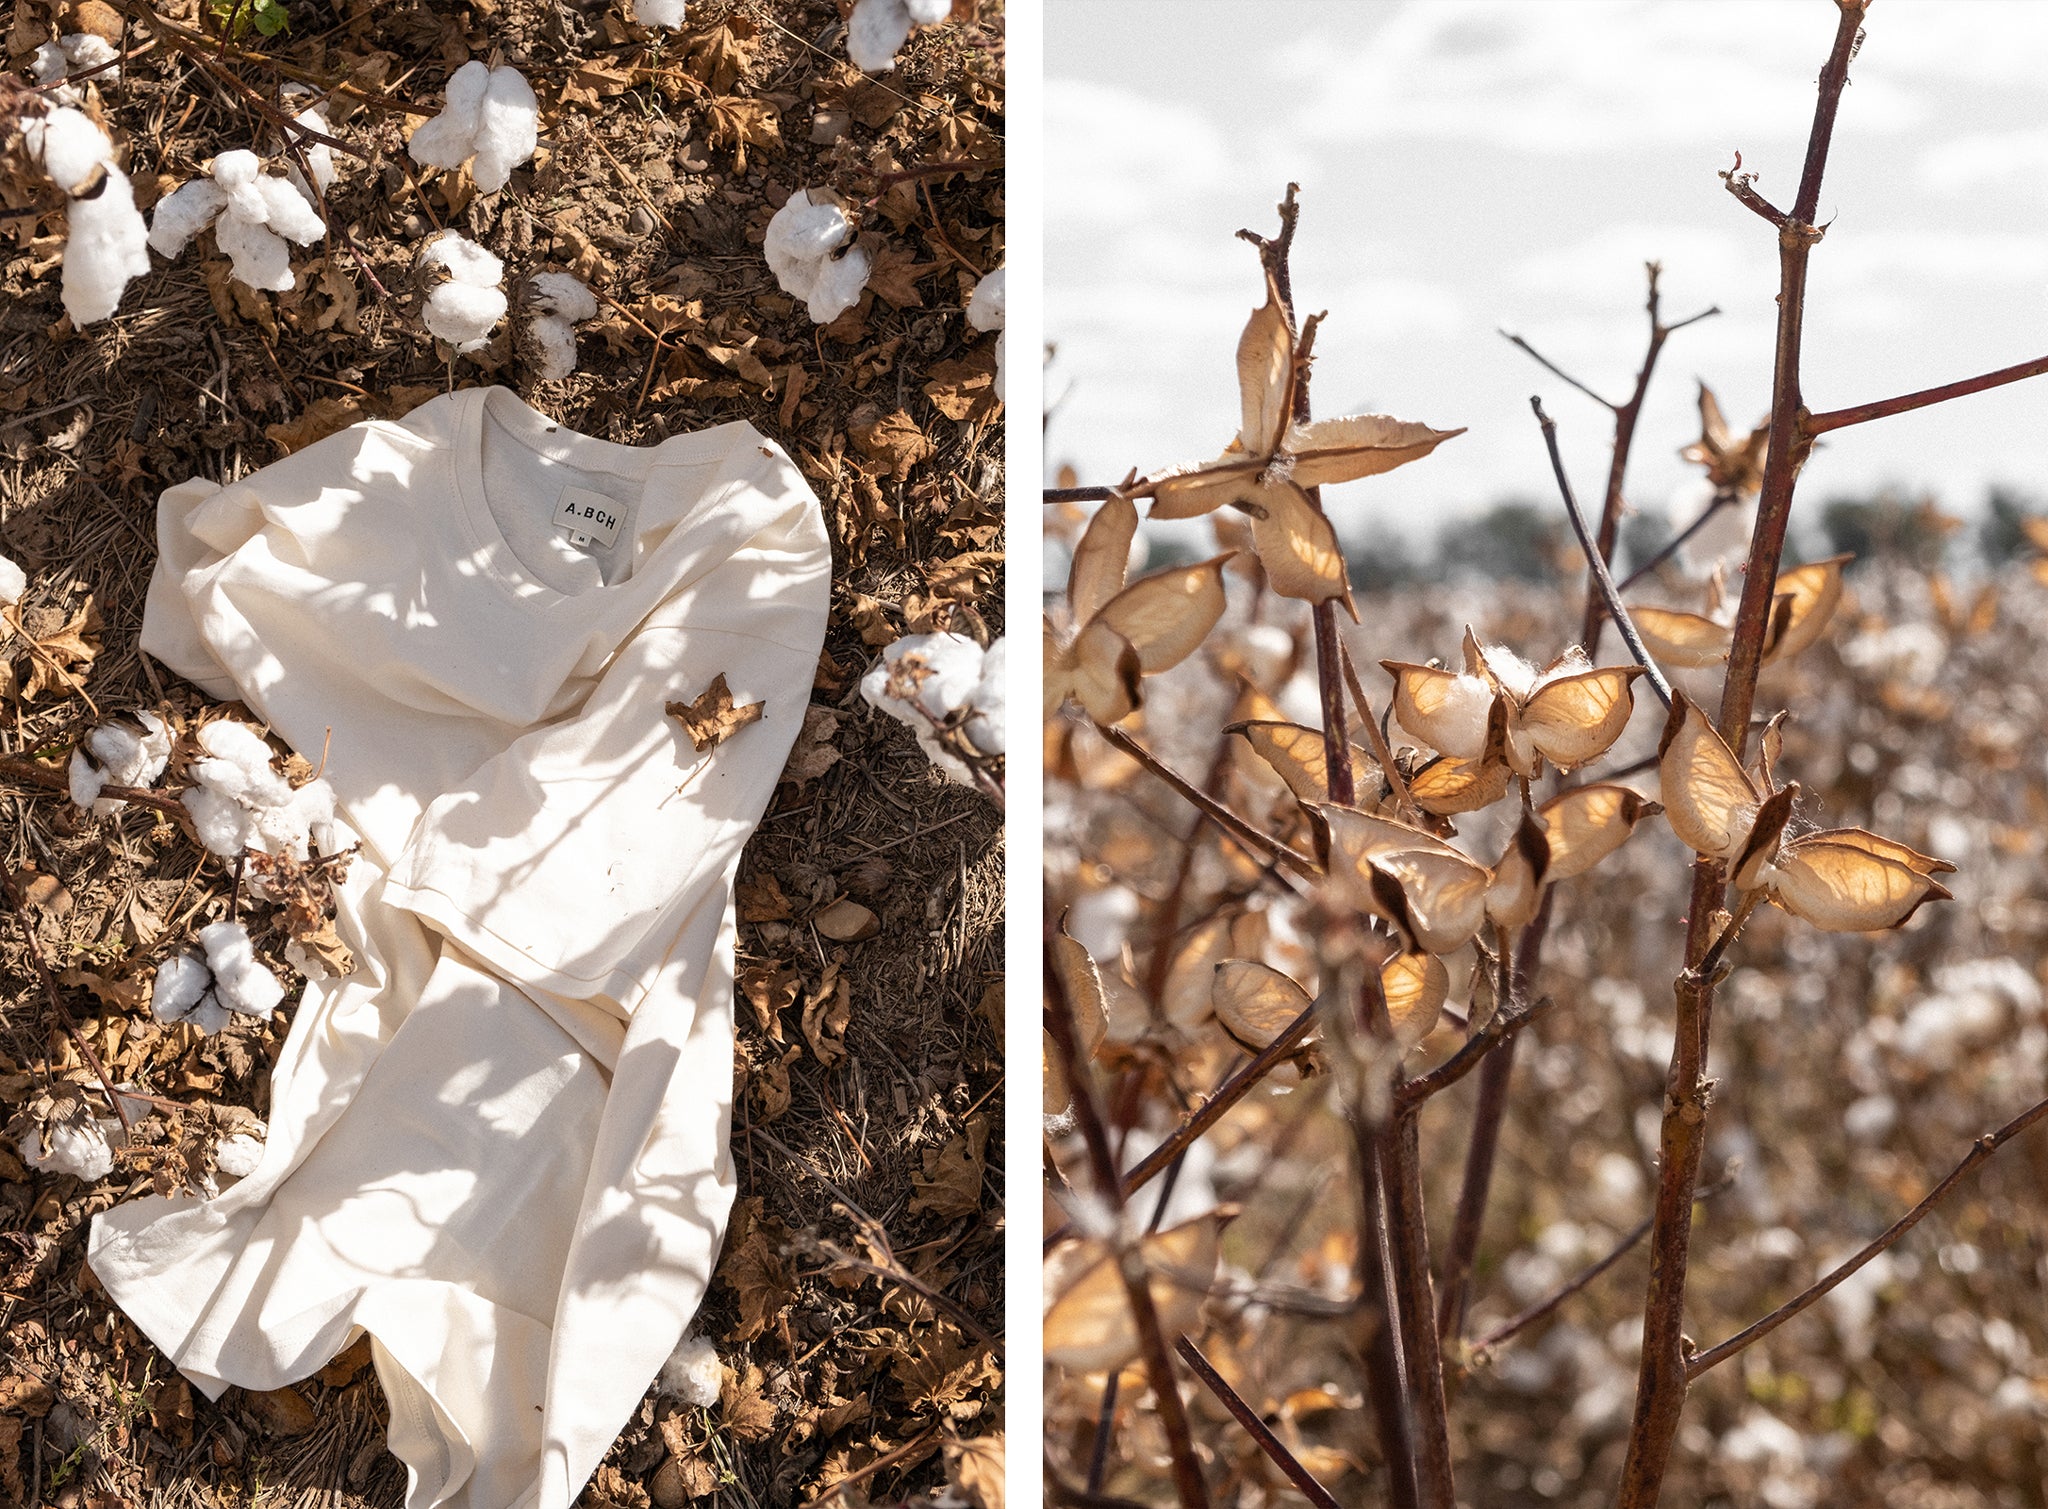 A.BCH Australian Cotton T-Shirt in the Australian cotton field